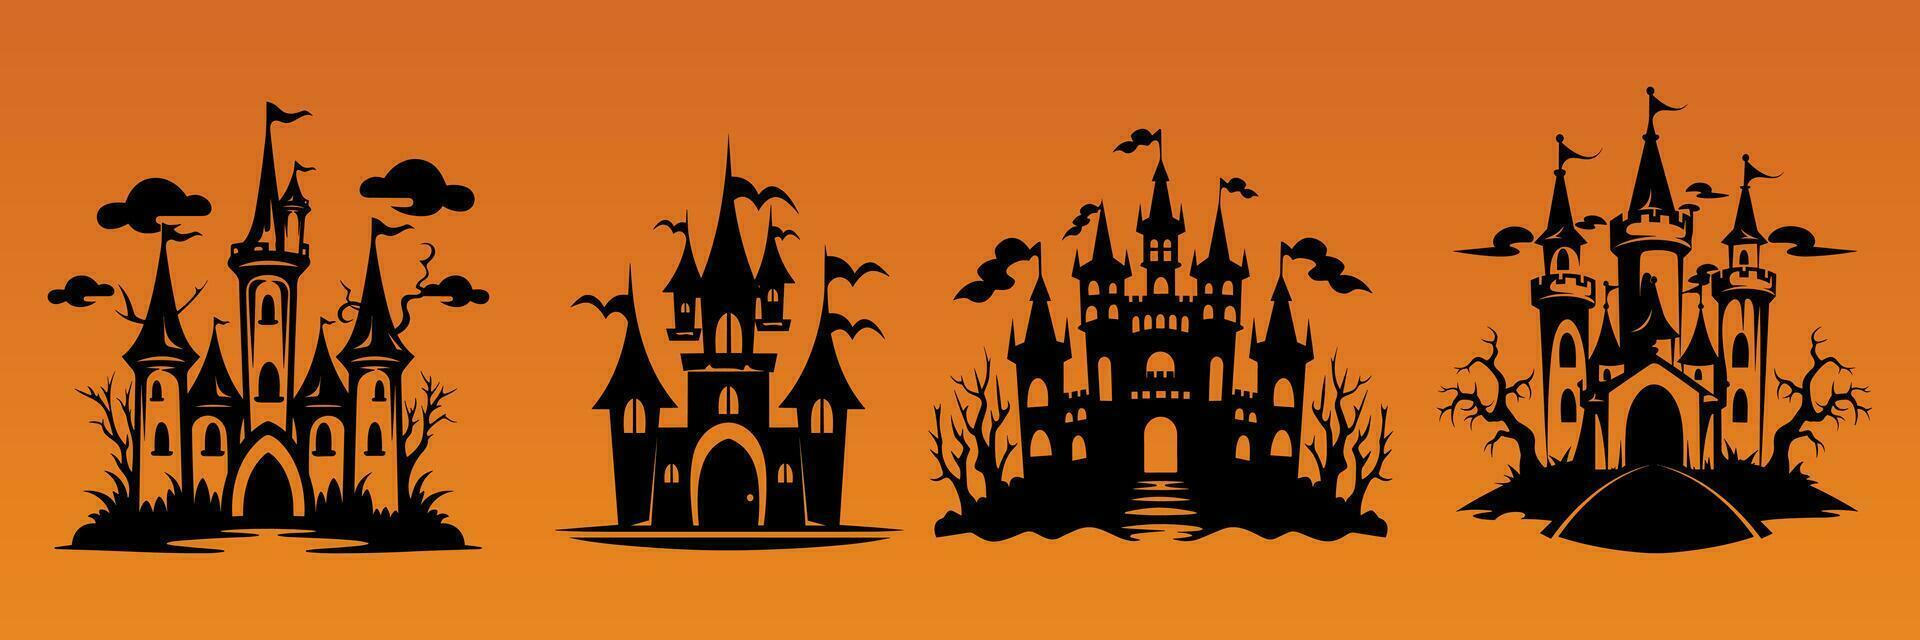 impostato di vettore Halloween castello paesaggio. nero castello sagoma. castello sillhouette con alberi vettore illustrazione